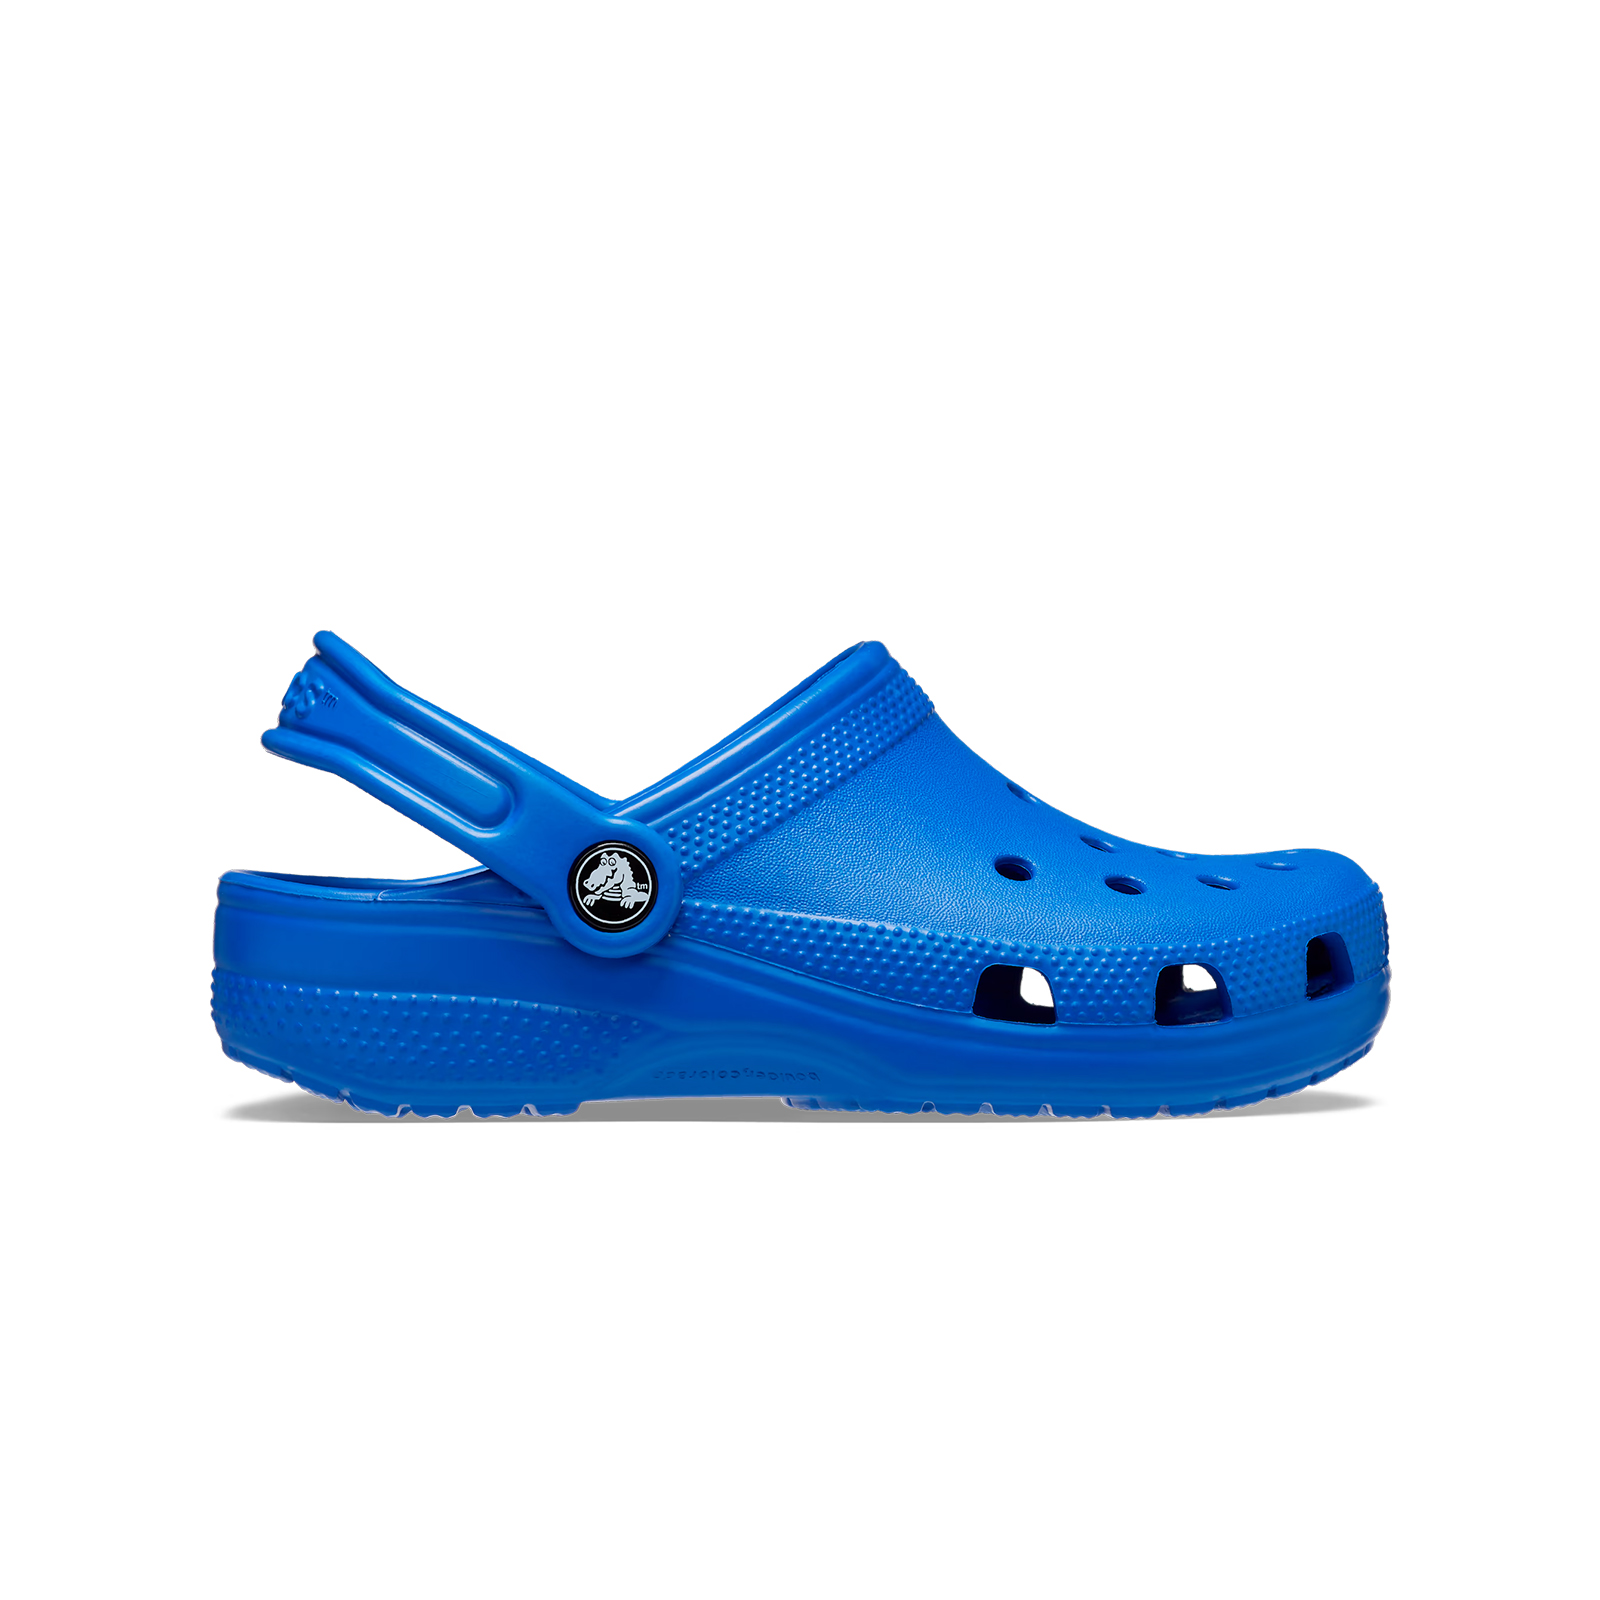 Παιδικά > Παπούτσια > Clogs > Glogs Crocs - CLASSIC CLOG K - BLUE BOLT